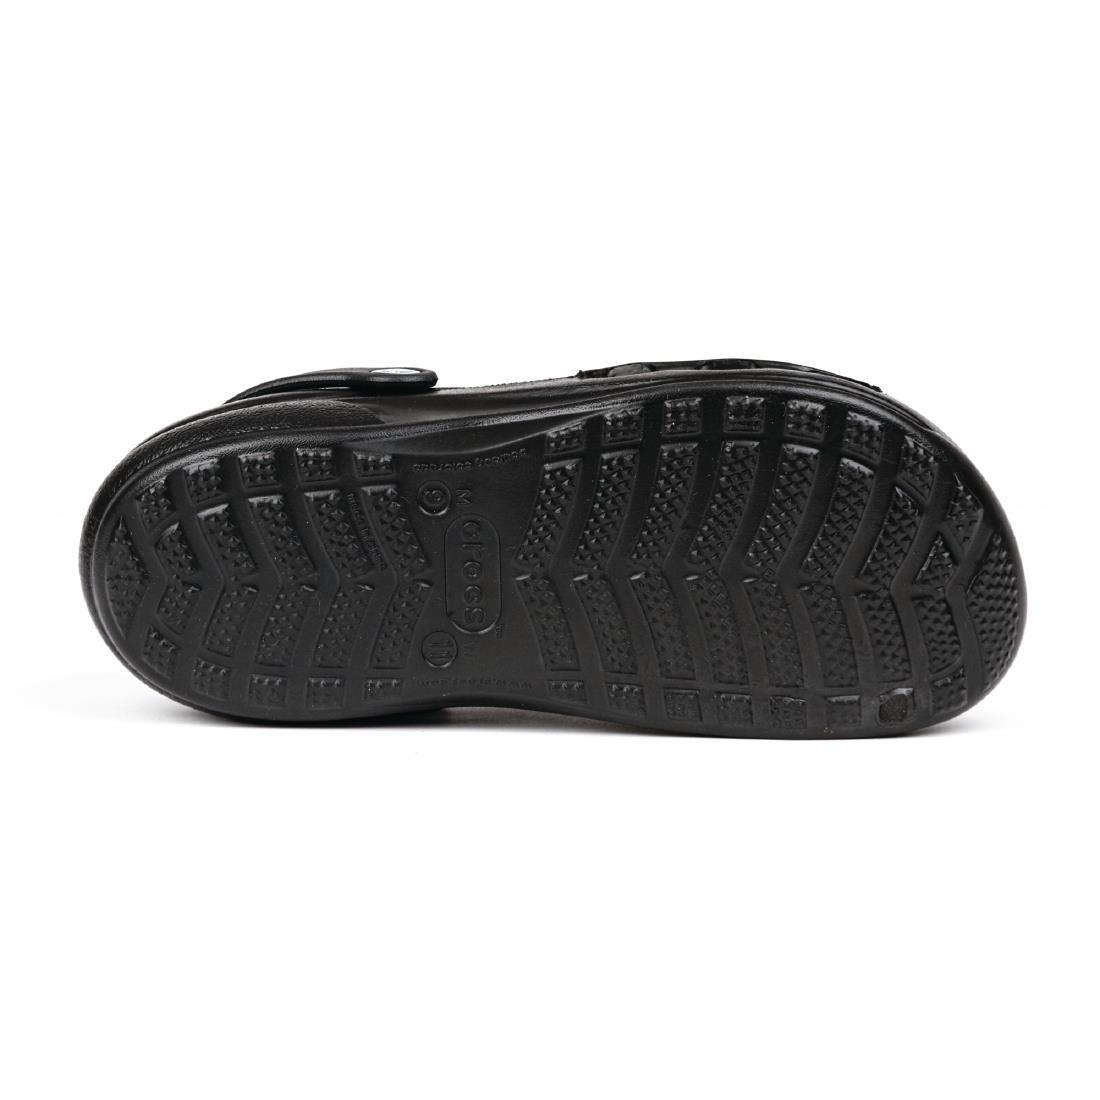 Crocs Specialist Vent Clogs Black 43 - A478-43  - 4